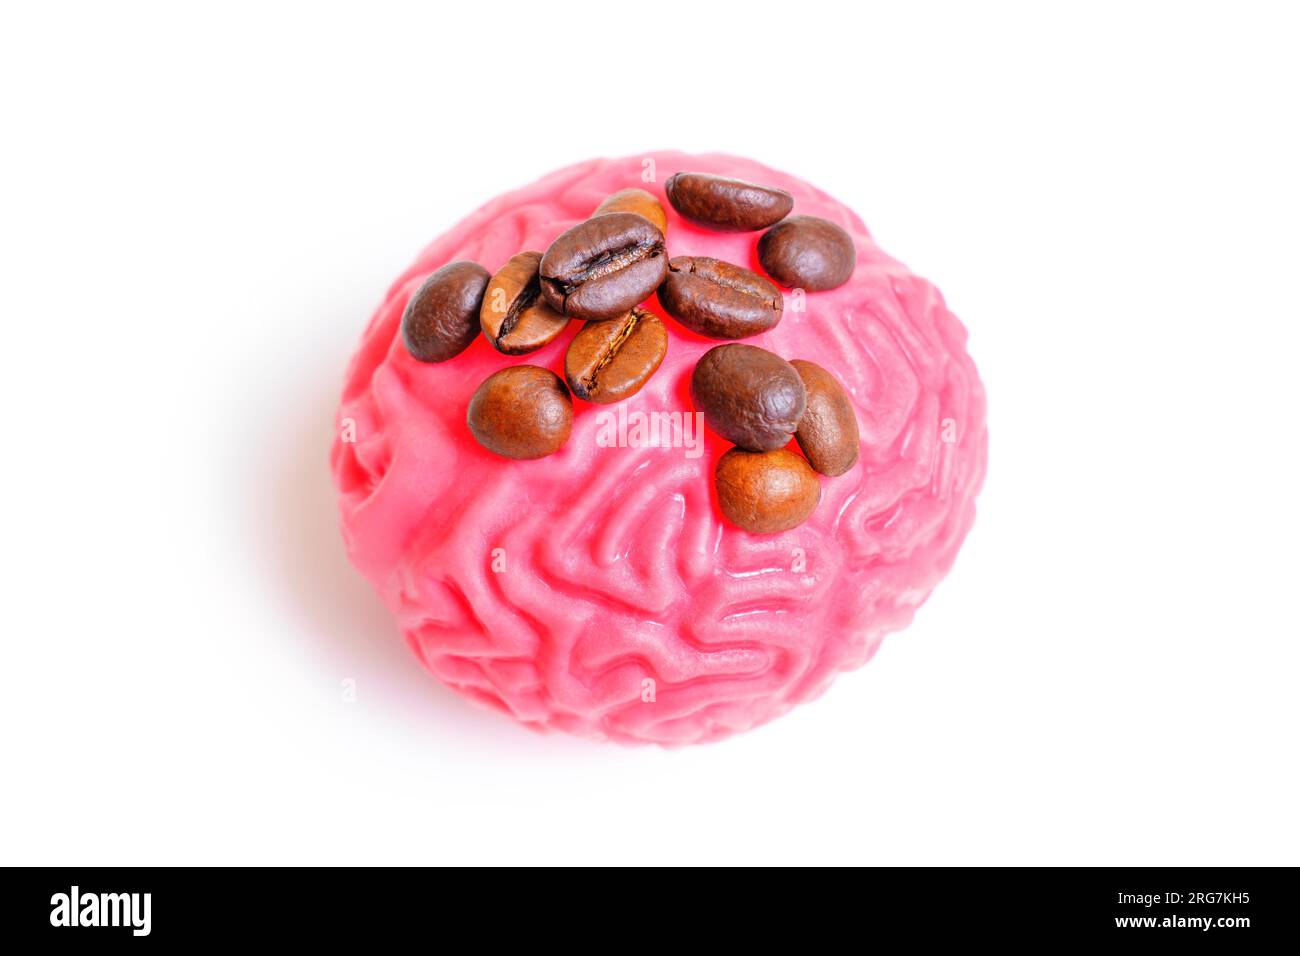 I chicchi di caffè riposano su un modello del cervello umano, simboleggiando gli effetti stimolanti della caffeina sulla funzione cognitiva. Foto Stock